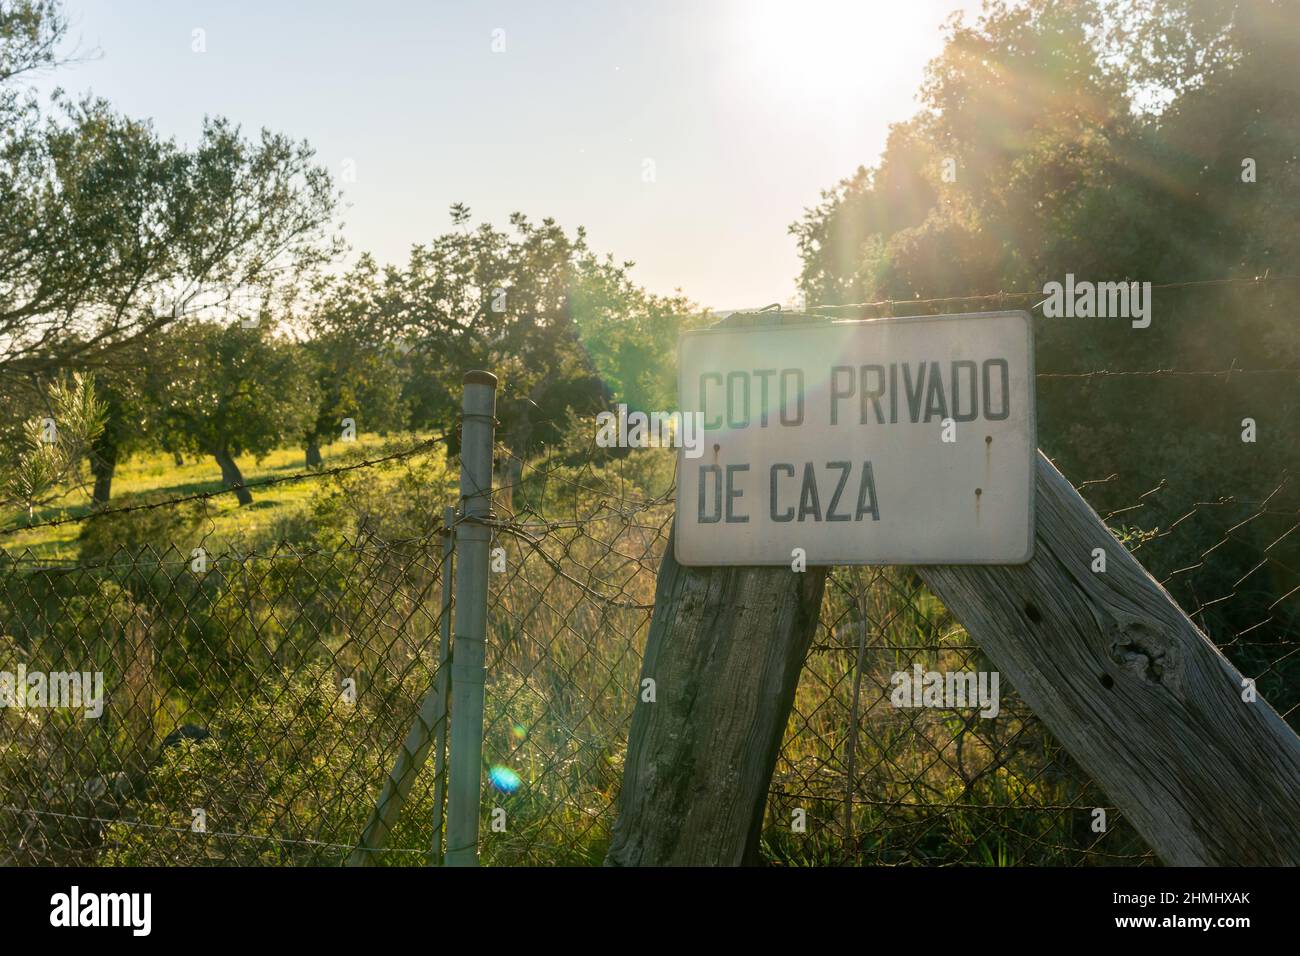 Cartello privato della riserva di caccia, scritto in spagnolo, in un campo rurale sull'isola di Maiorca, Spagna Foto Stock